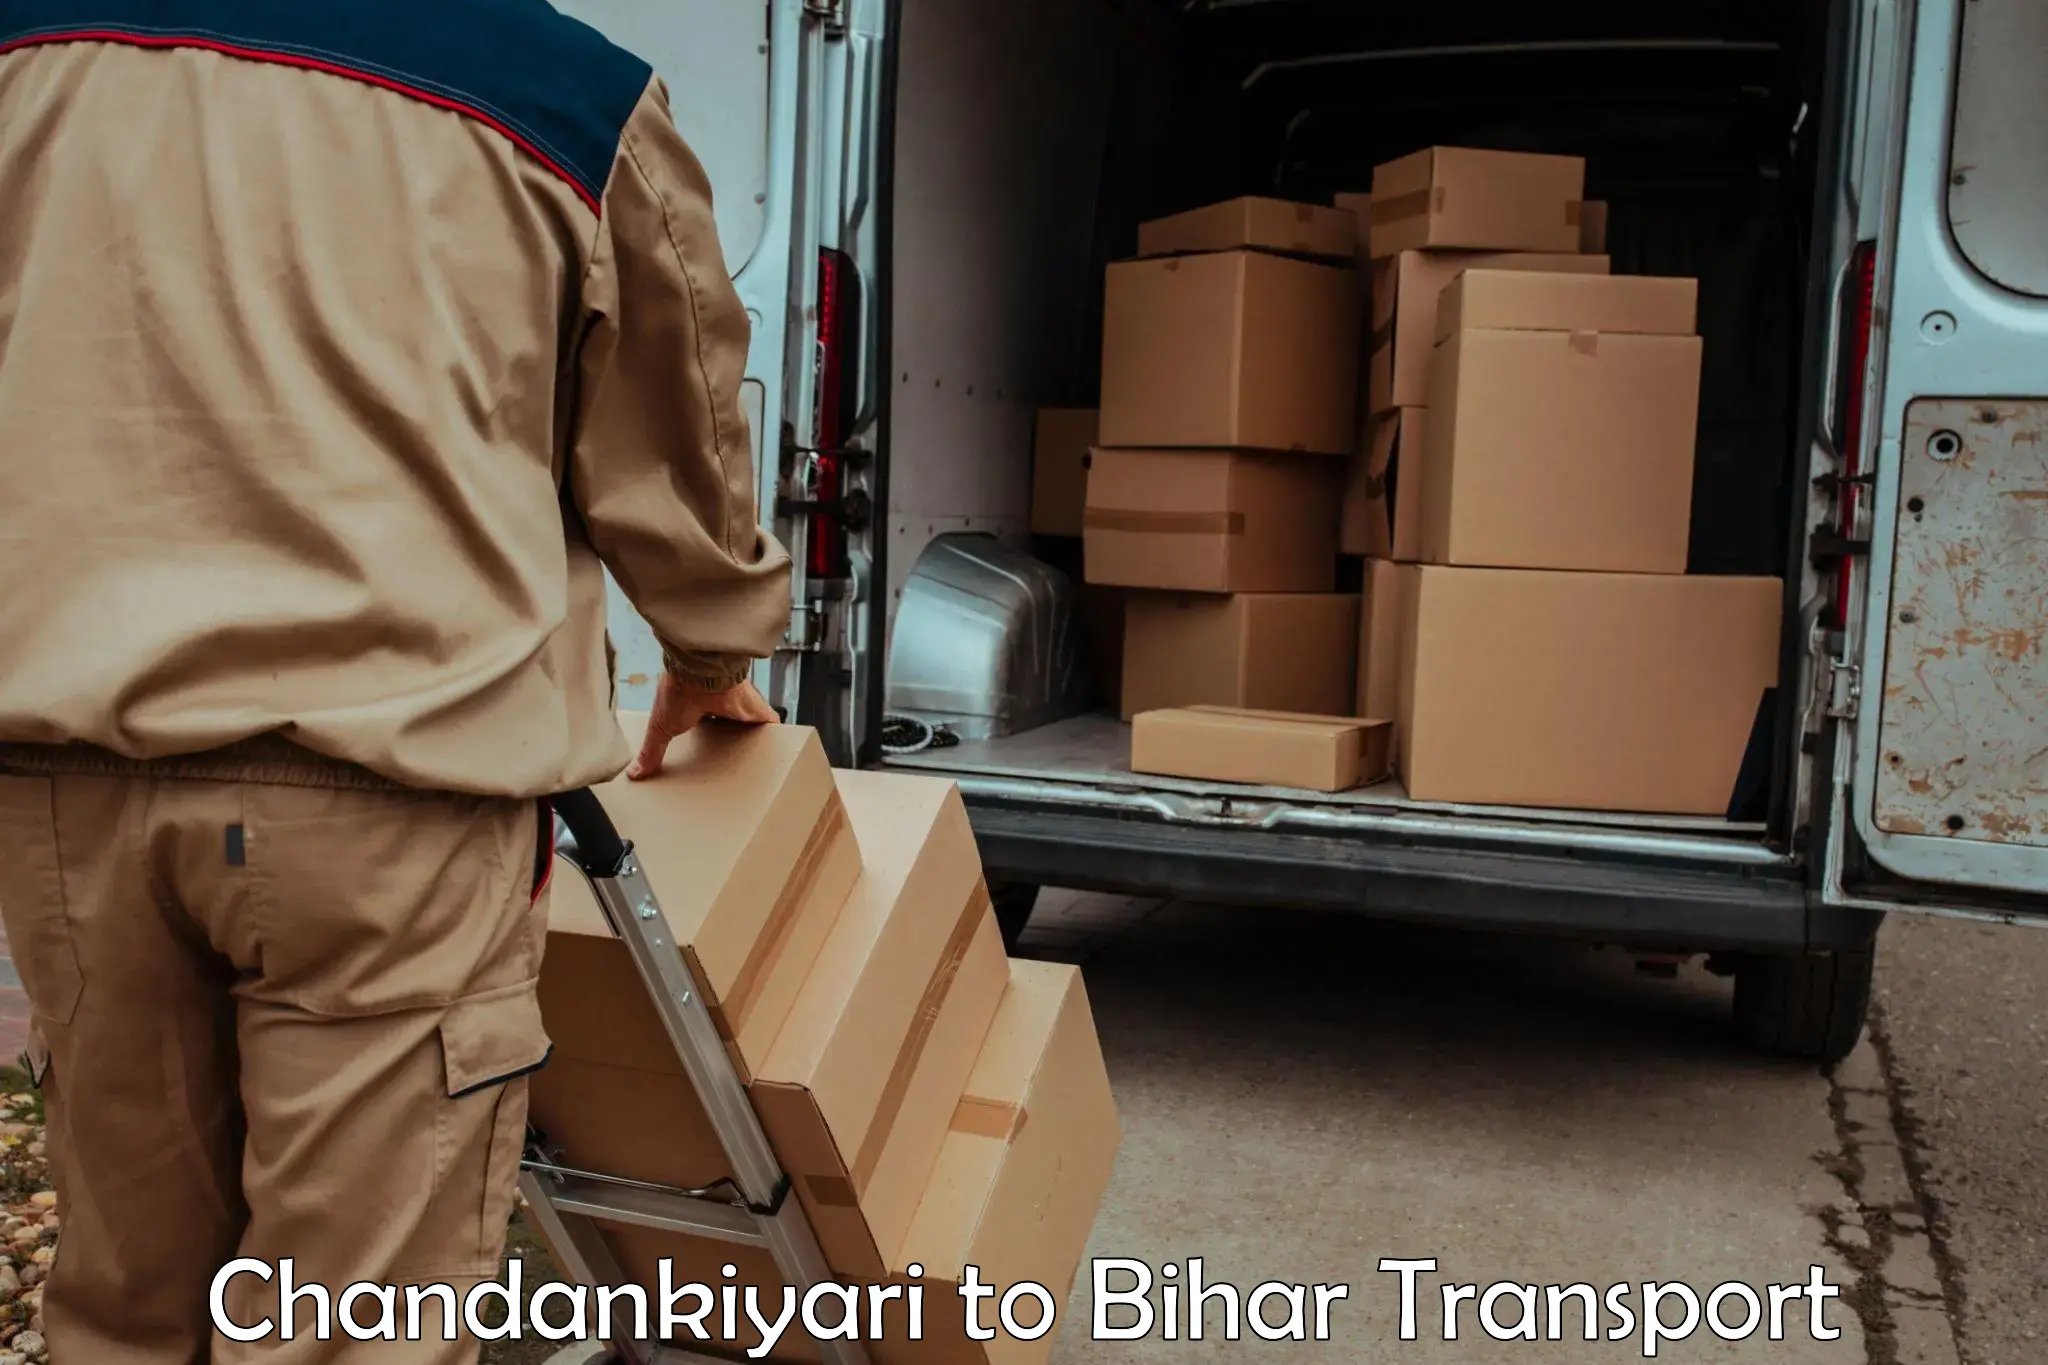 Land transport services Chandankiyari to Kumarkhand